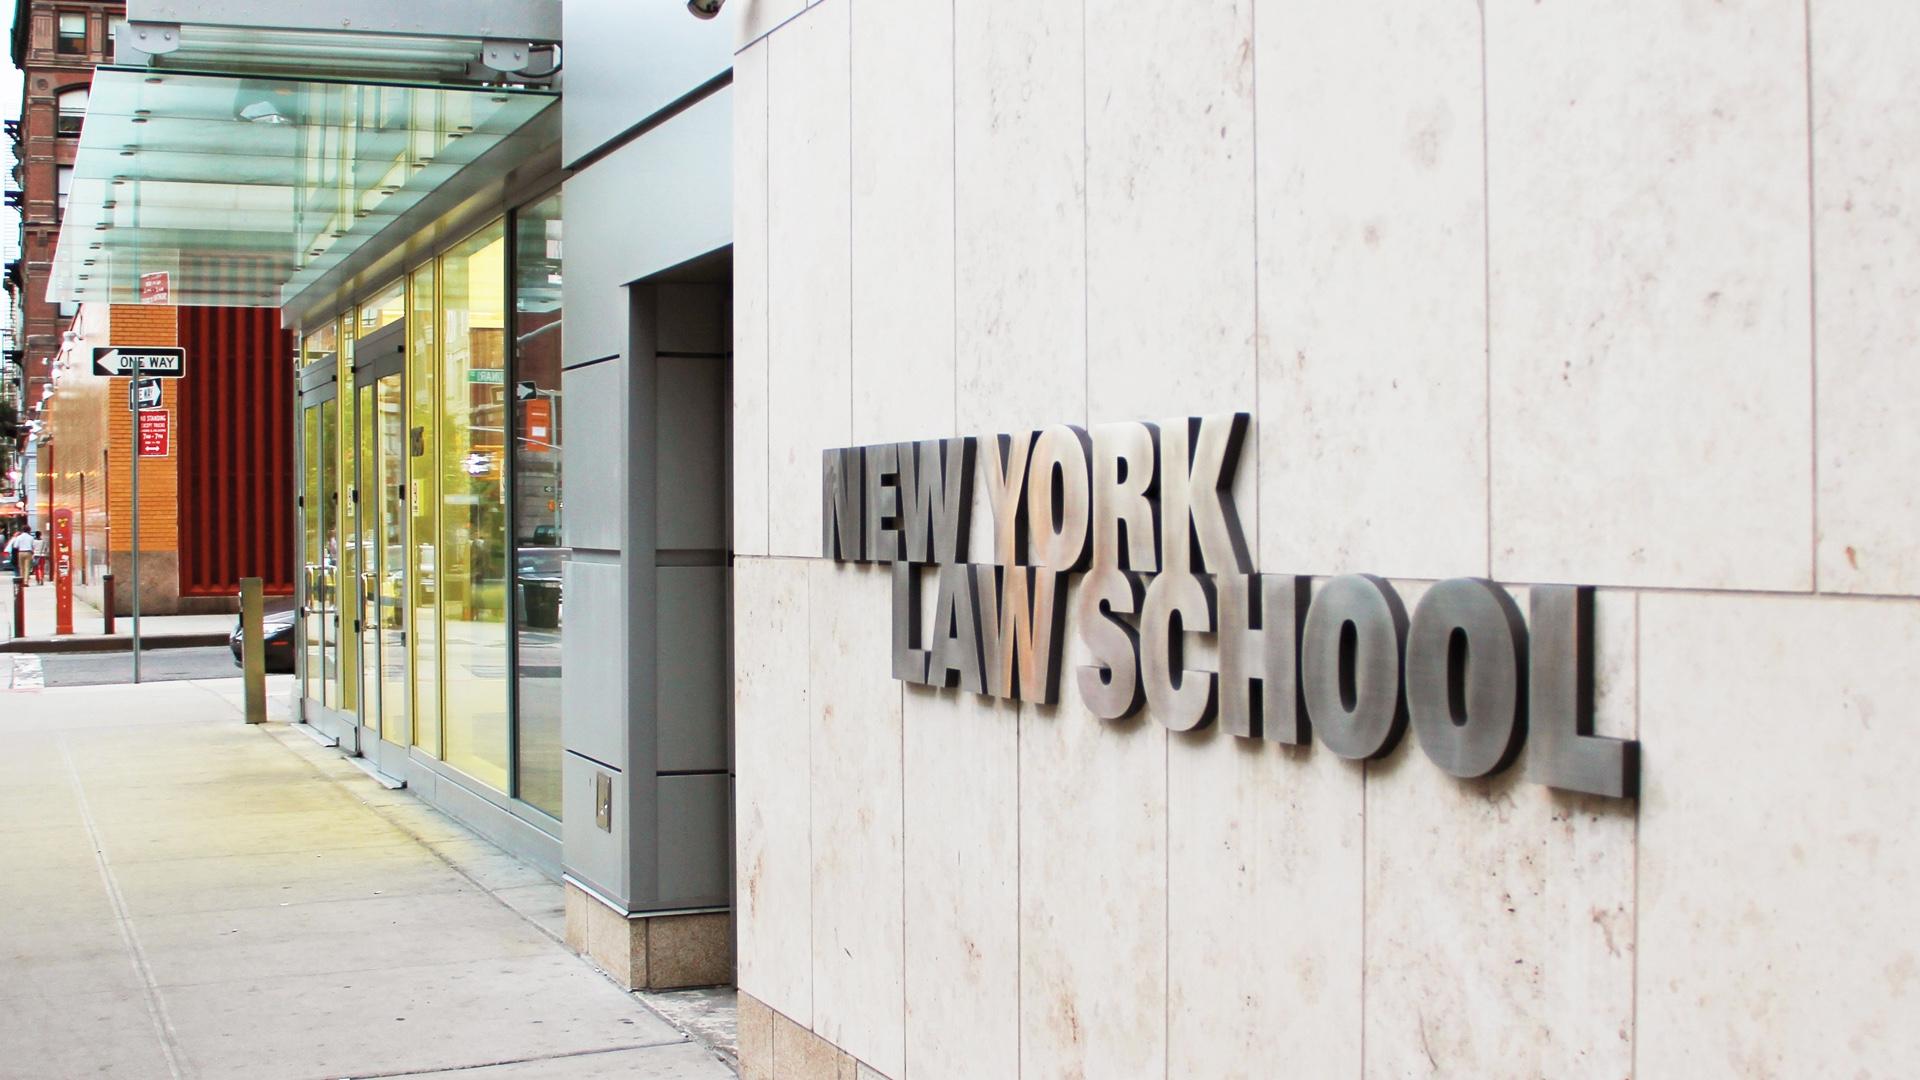 Academics New York Law School